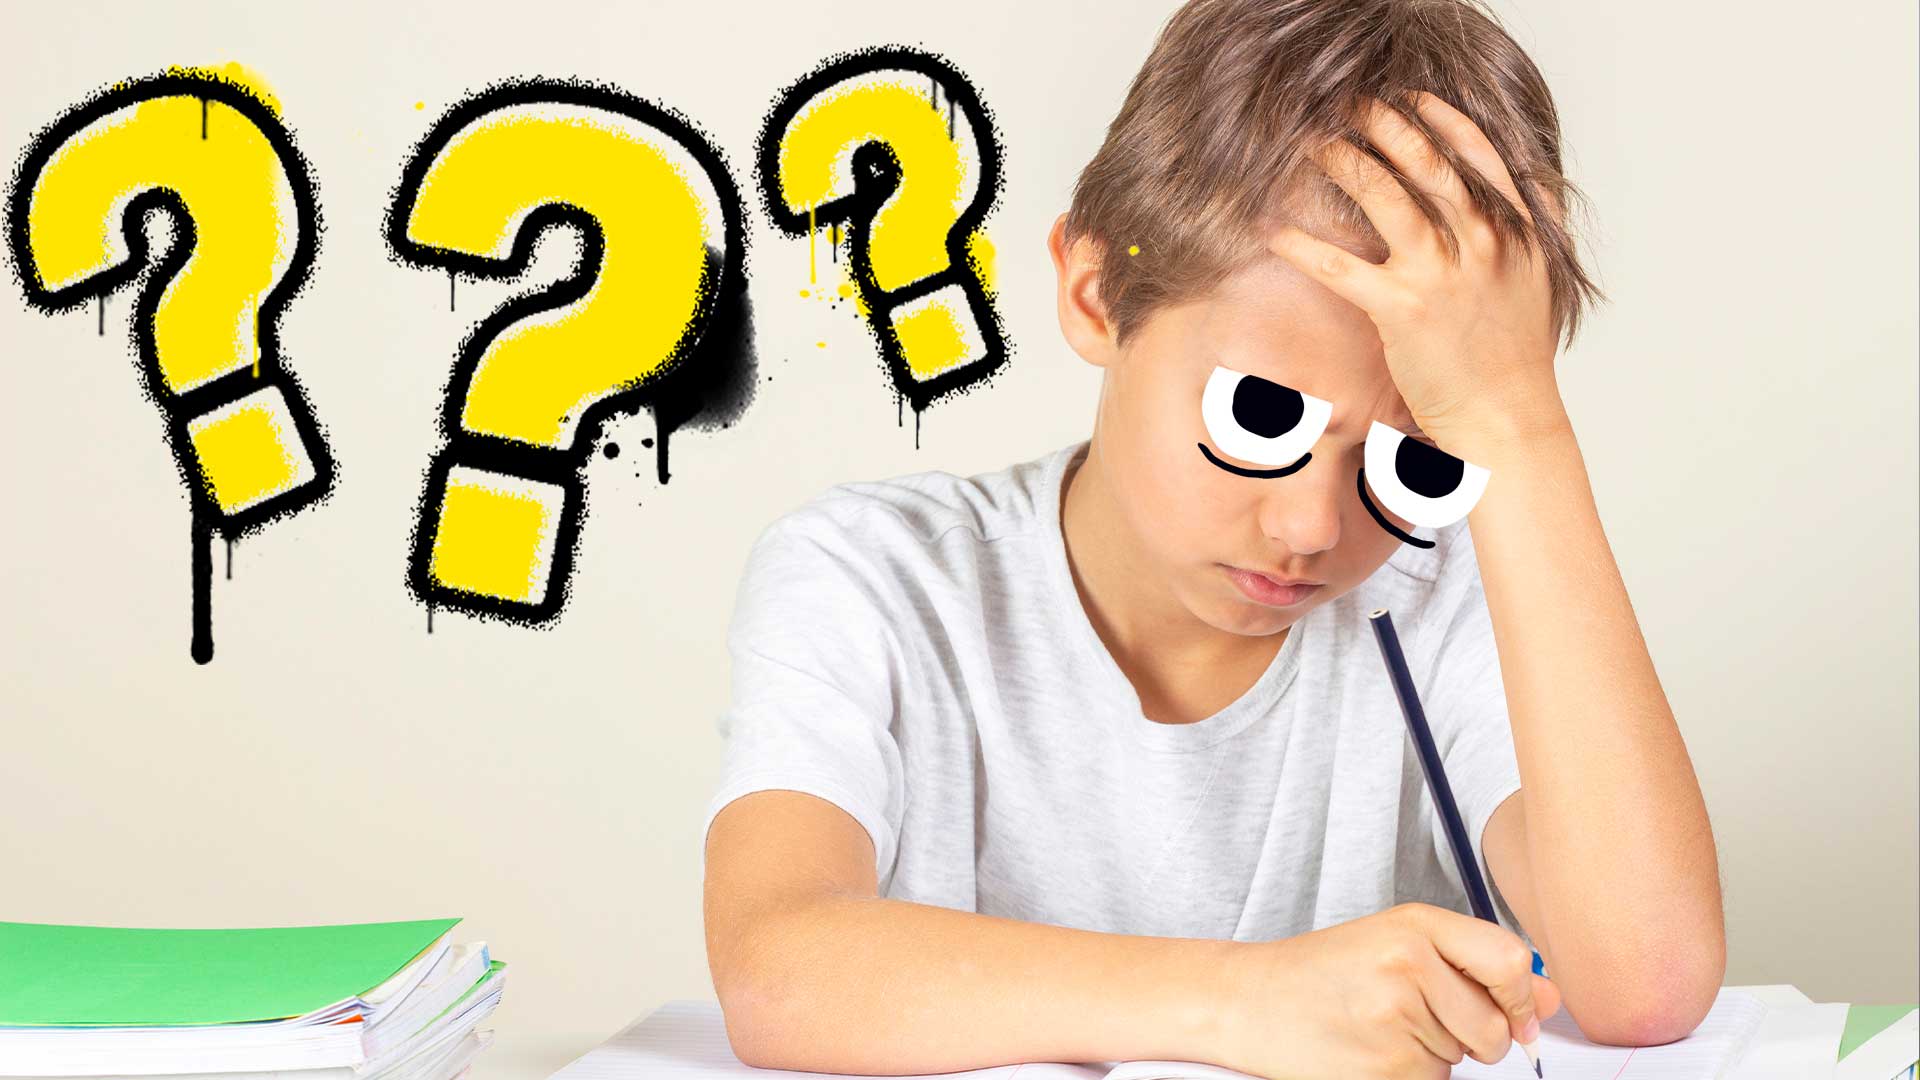 A boy doing homework